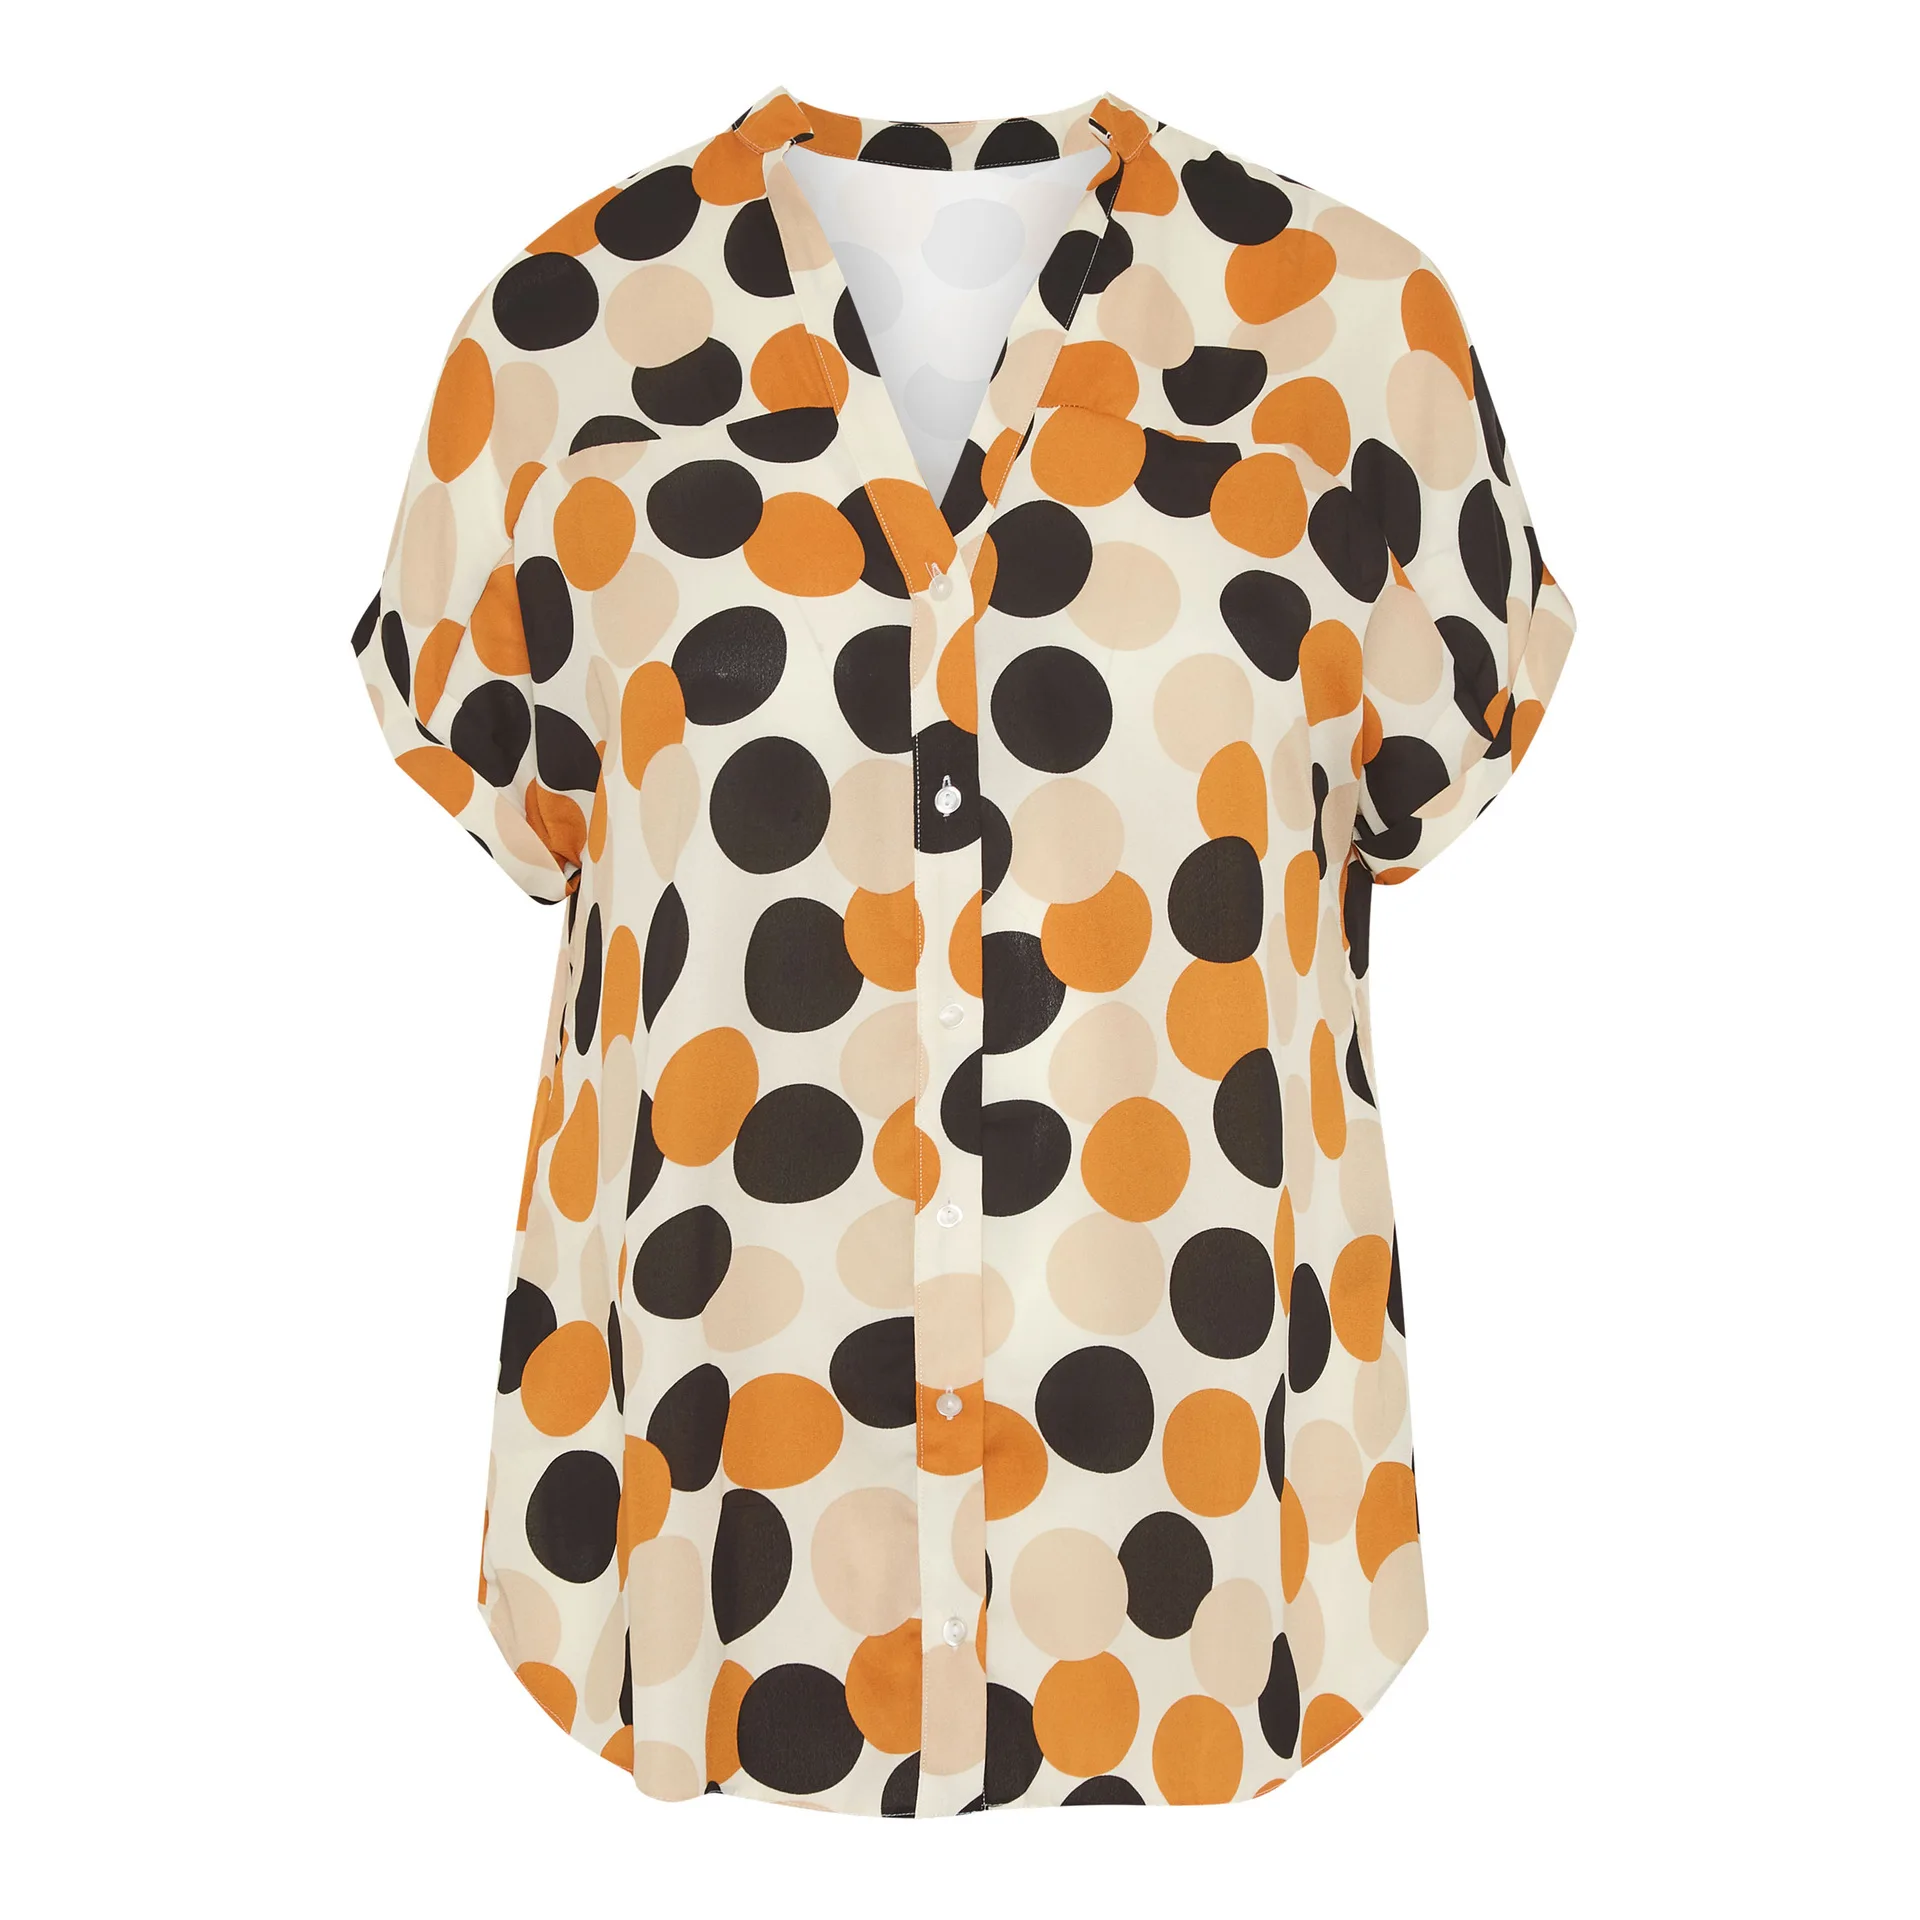 polka dot impressão digital camiseta casual com decote em v topos